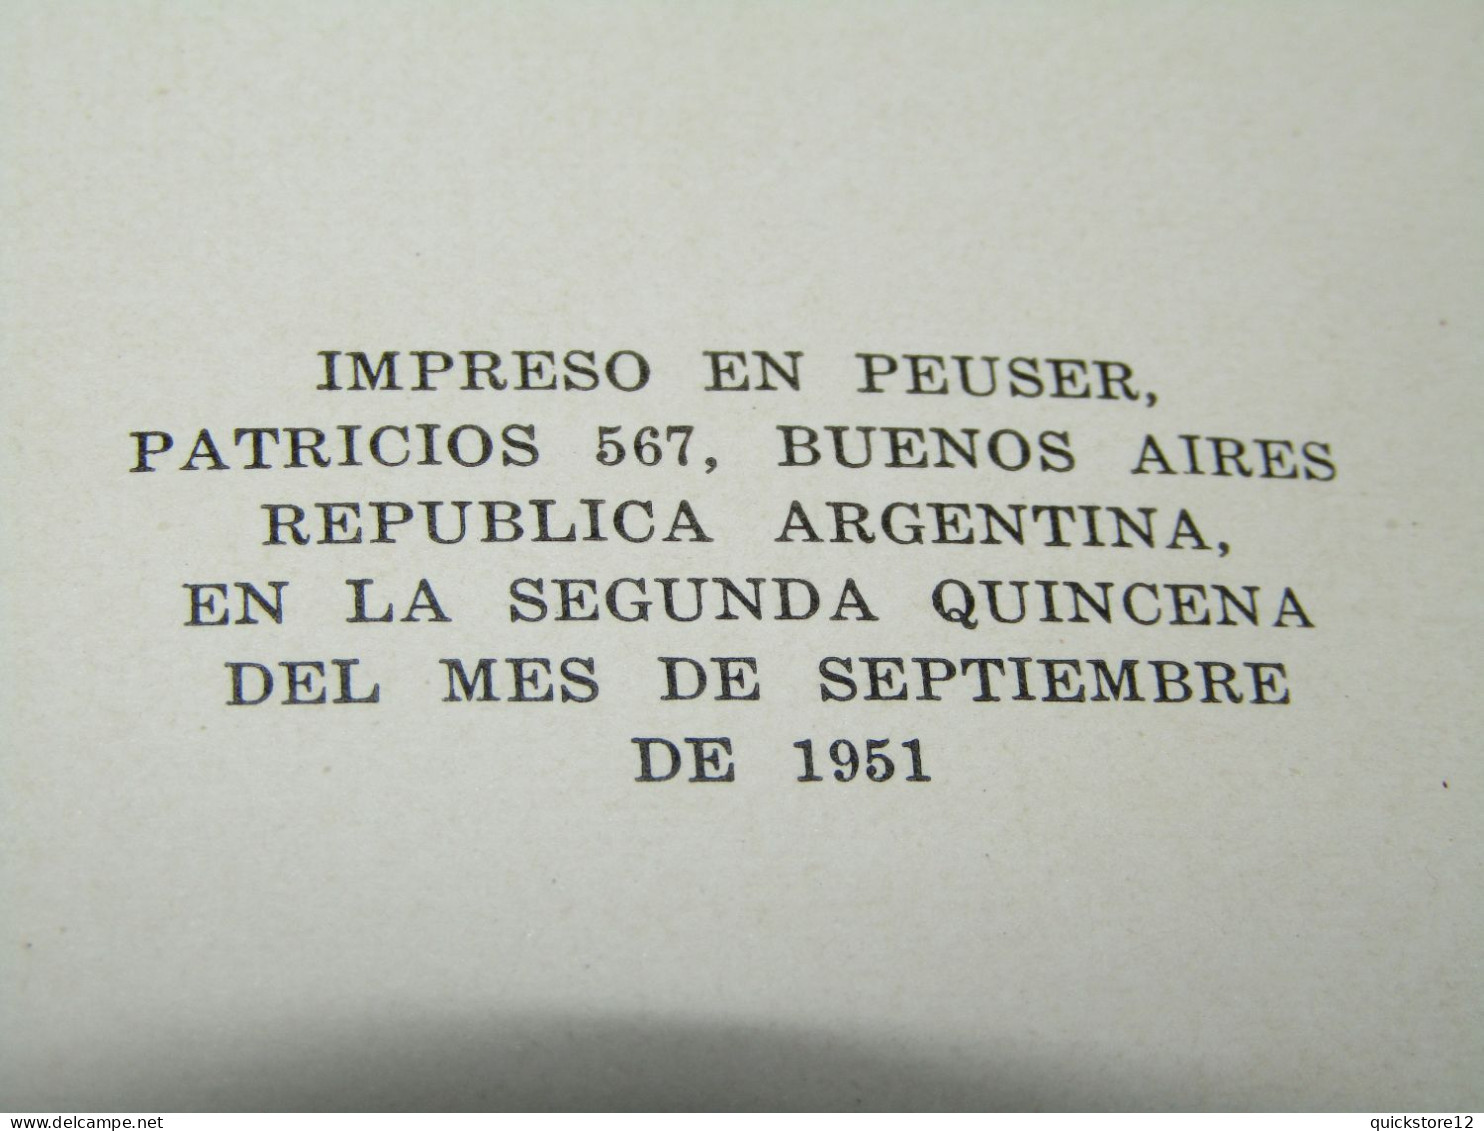 La razón de mi vida - Eva Perón AUTOGRAFIADO - Ediciones Peuser